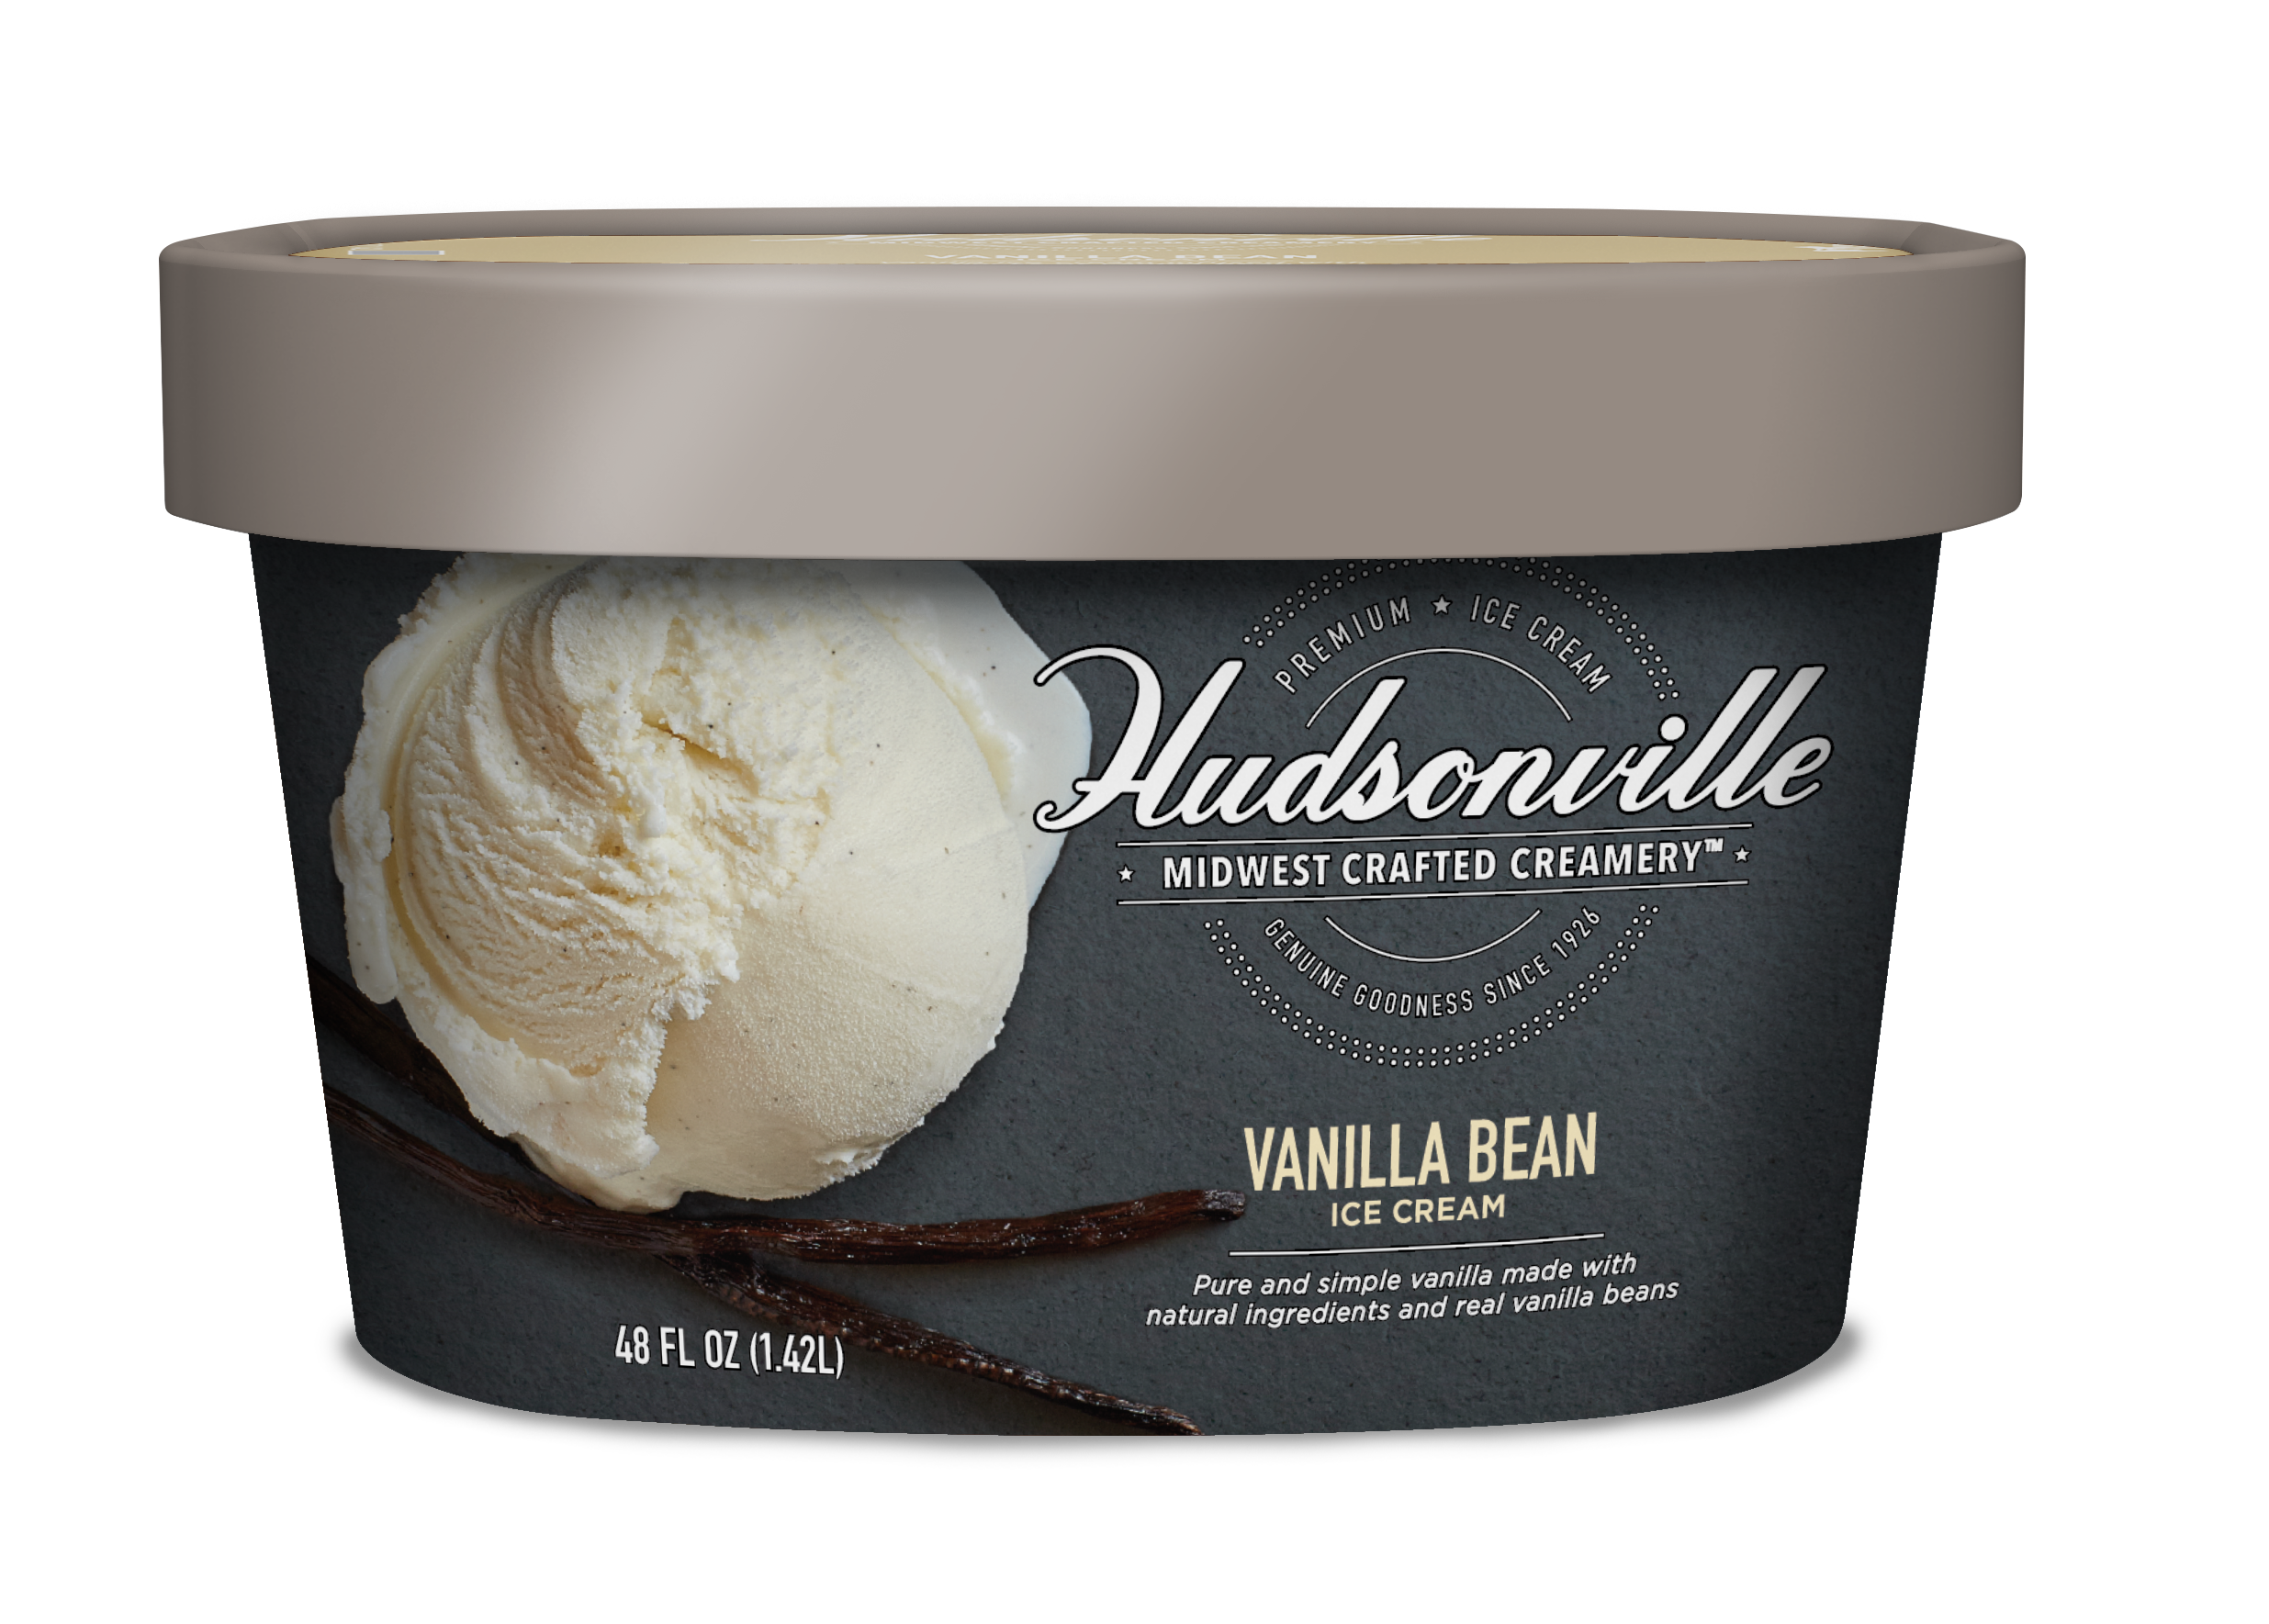 Hudsonville Ice Cream: Vanilla Bean